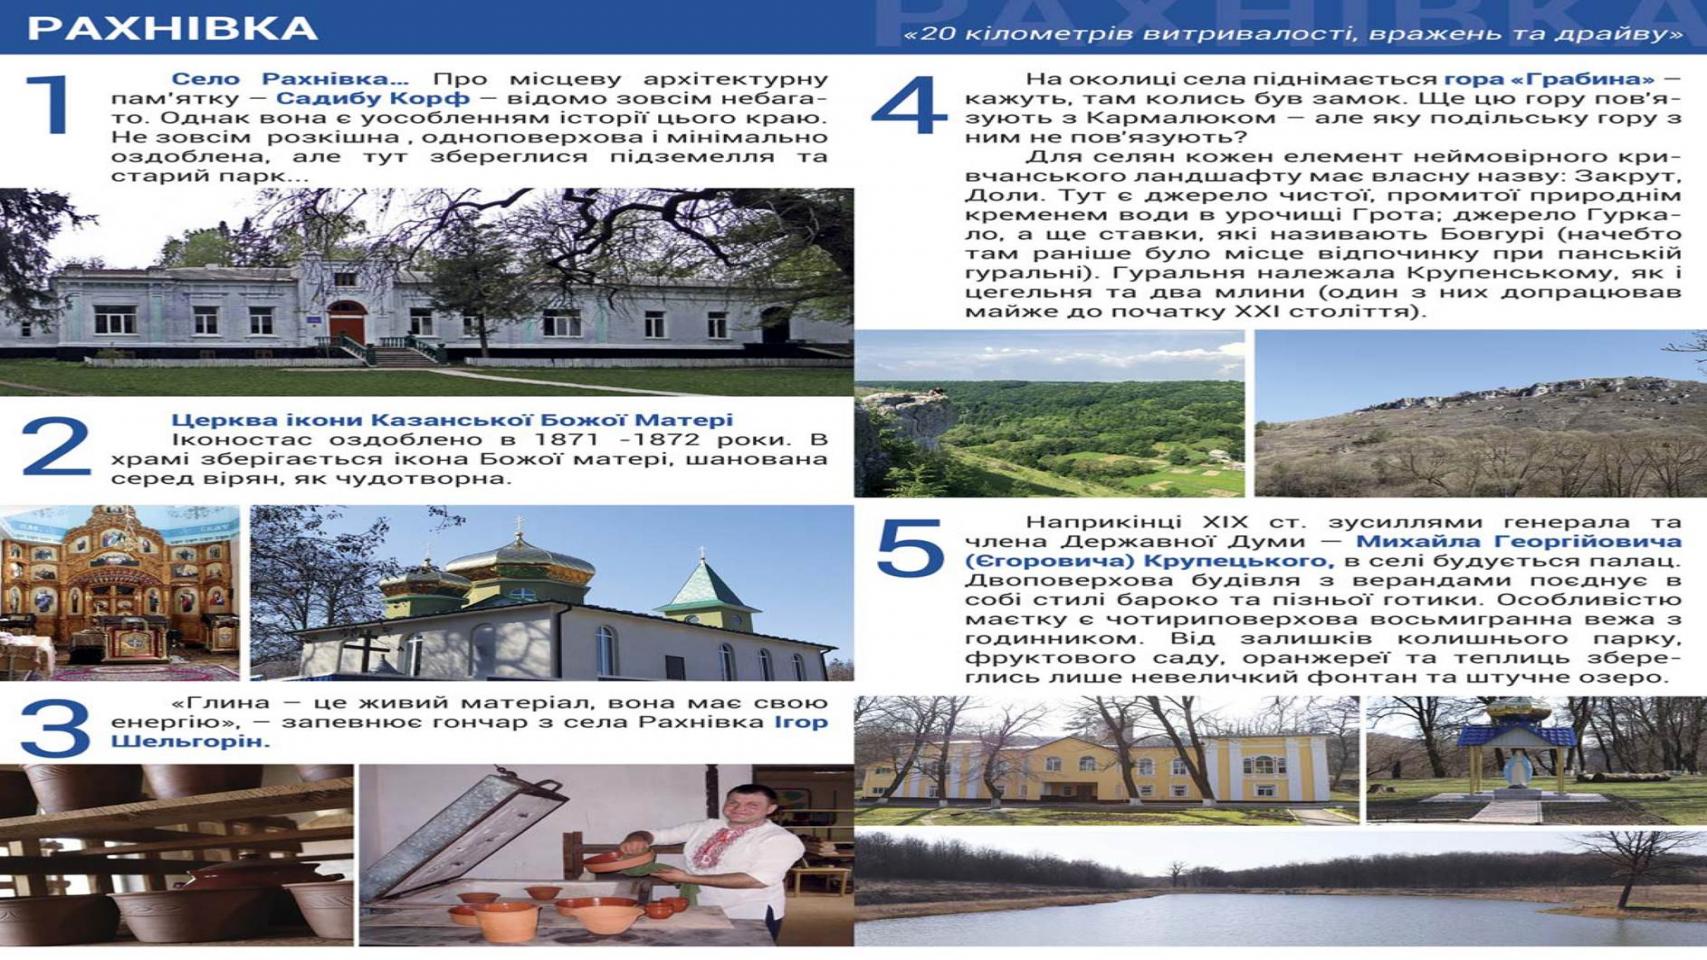 http://dunrada.gov.ua/uploadfile/archive_article/2020/01/31/2020-01-31_678/images/images-93843.jpg